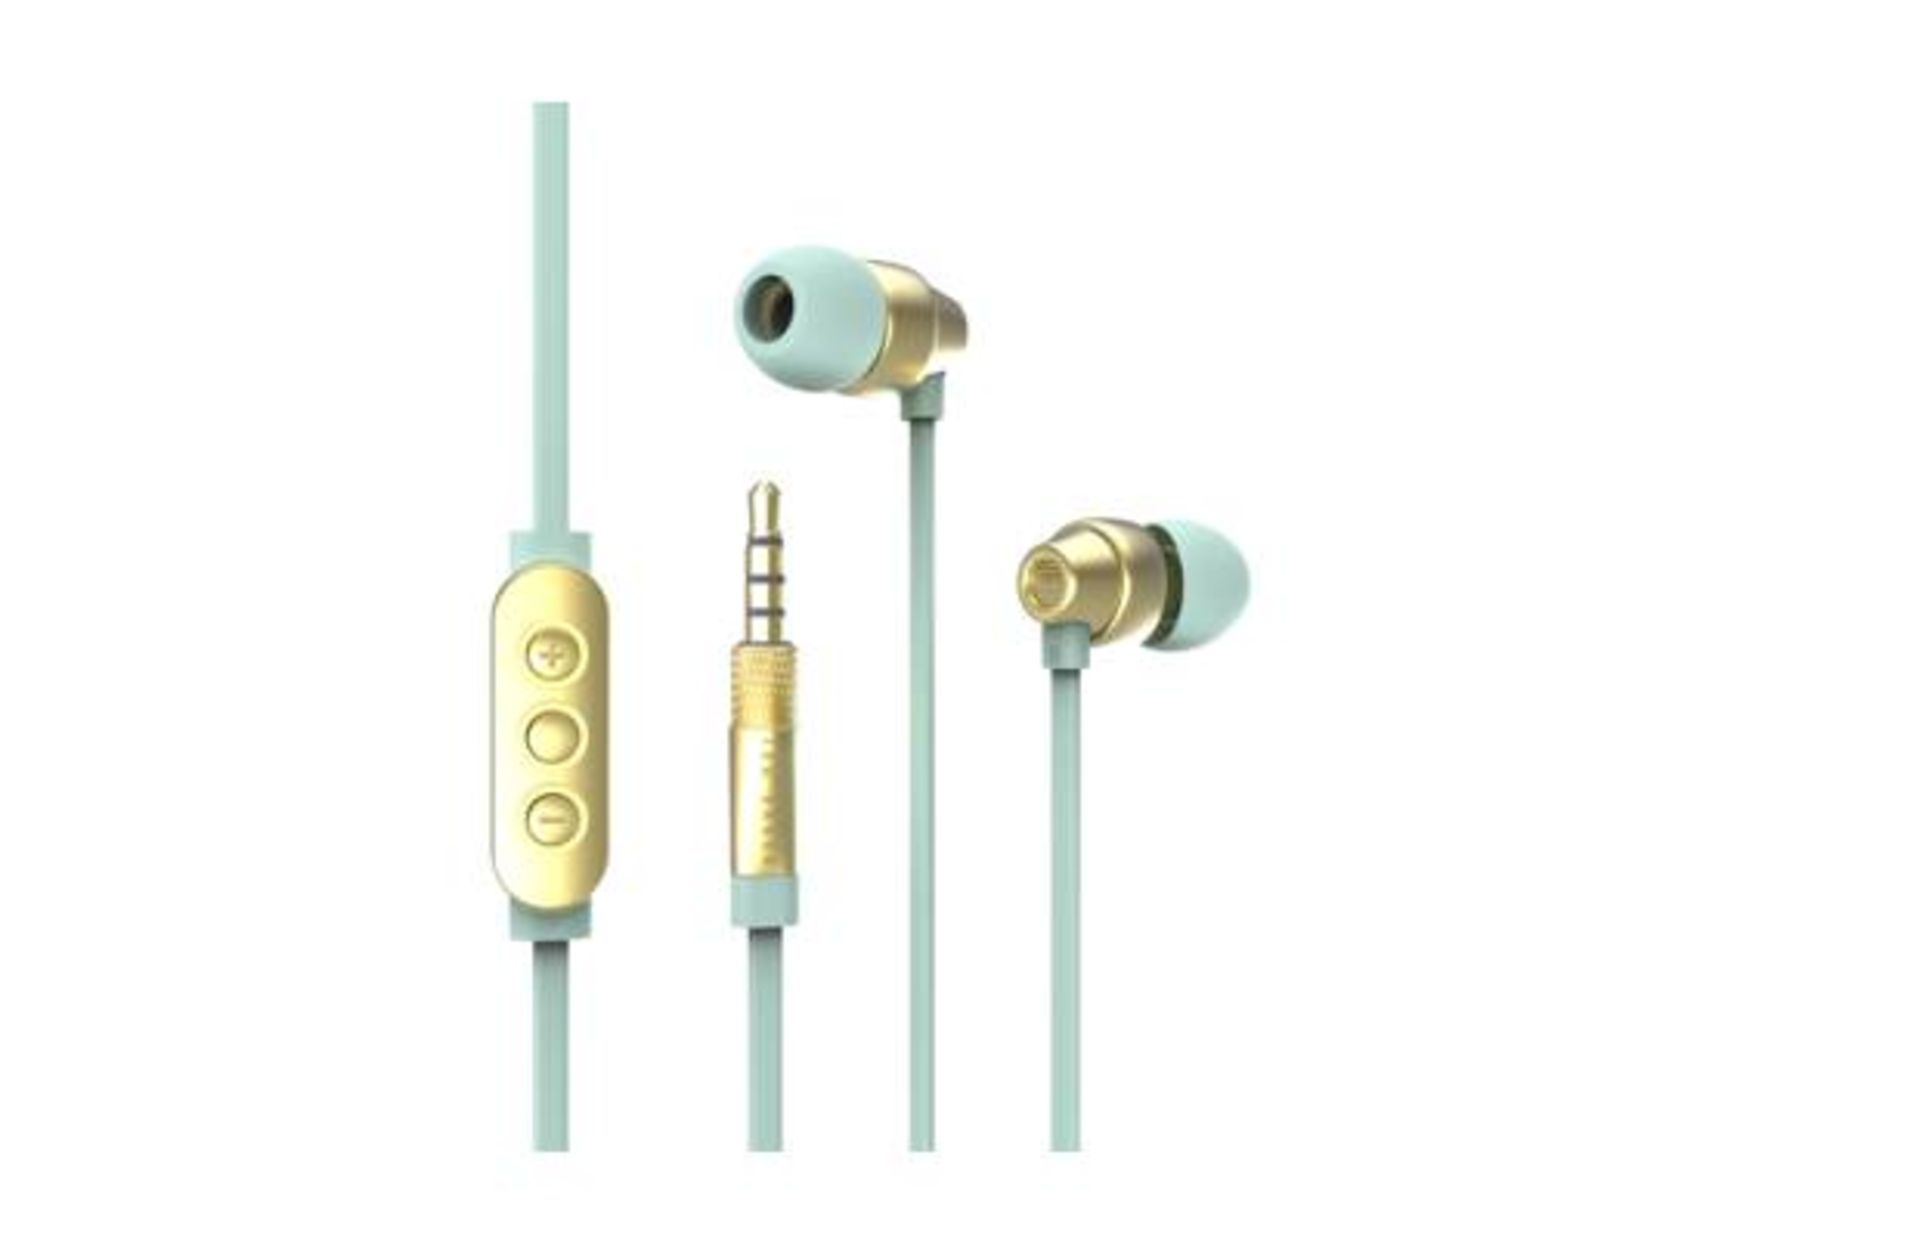 V Brand New Ted Baker Dover In-Ear Headphones In Mint/Gold RRP£59.95 eBay£39.99